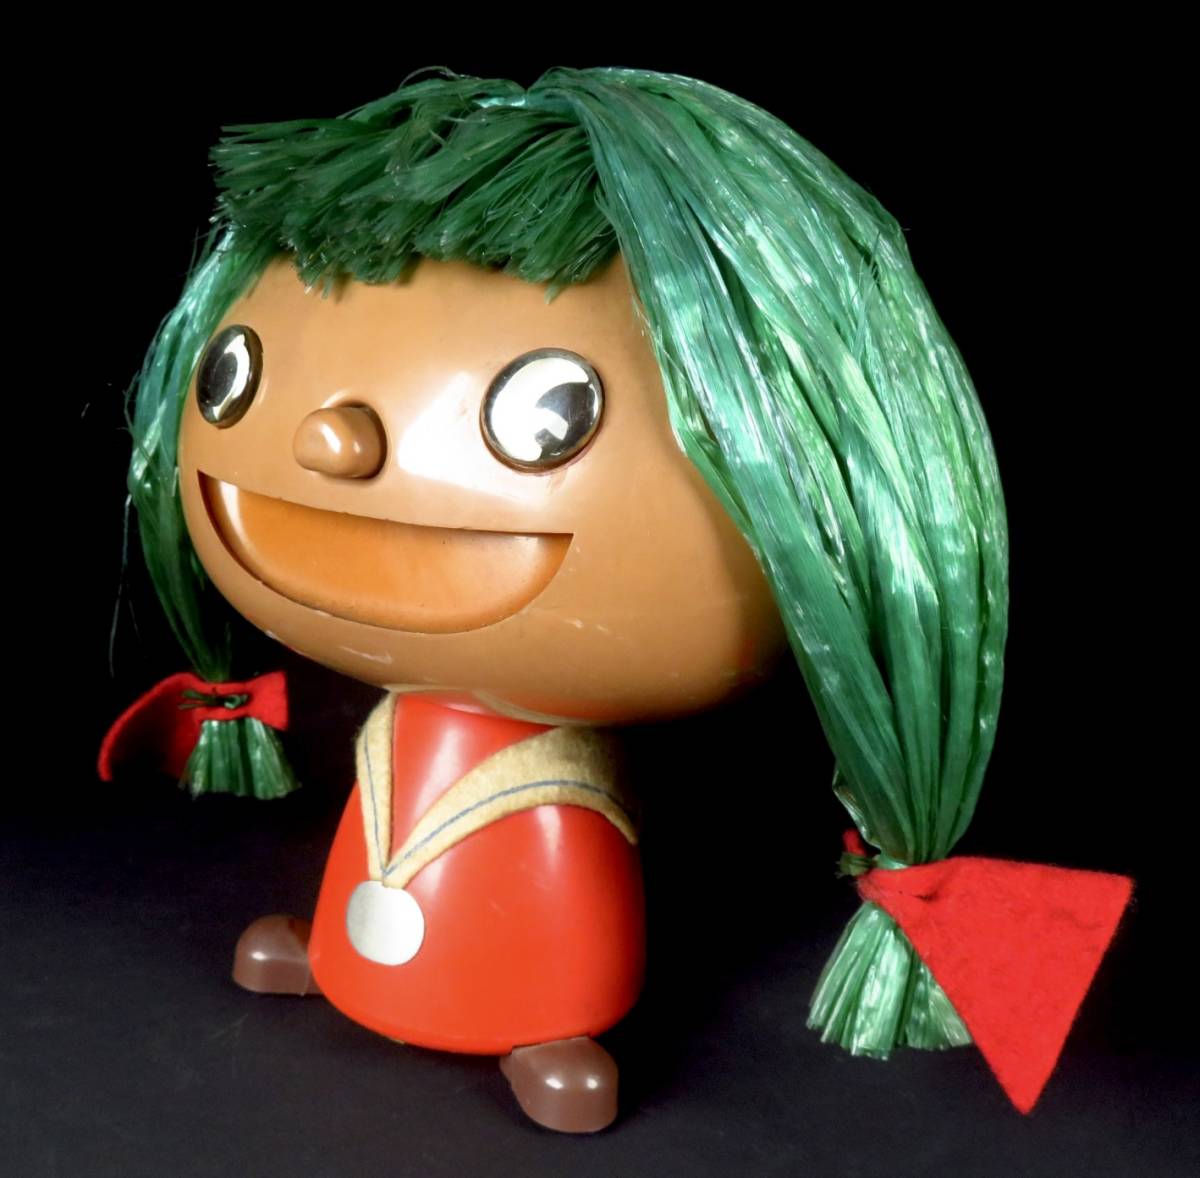 [SAKURAYA] трудно найти не продается [. мыс Glyco. приз товар ....kemeko кукла ] редкий товар подлинная вещь подарок Novelty Showa Retro фигурка Vintage 